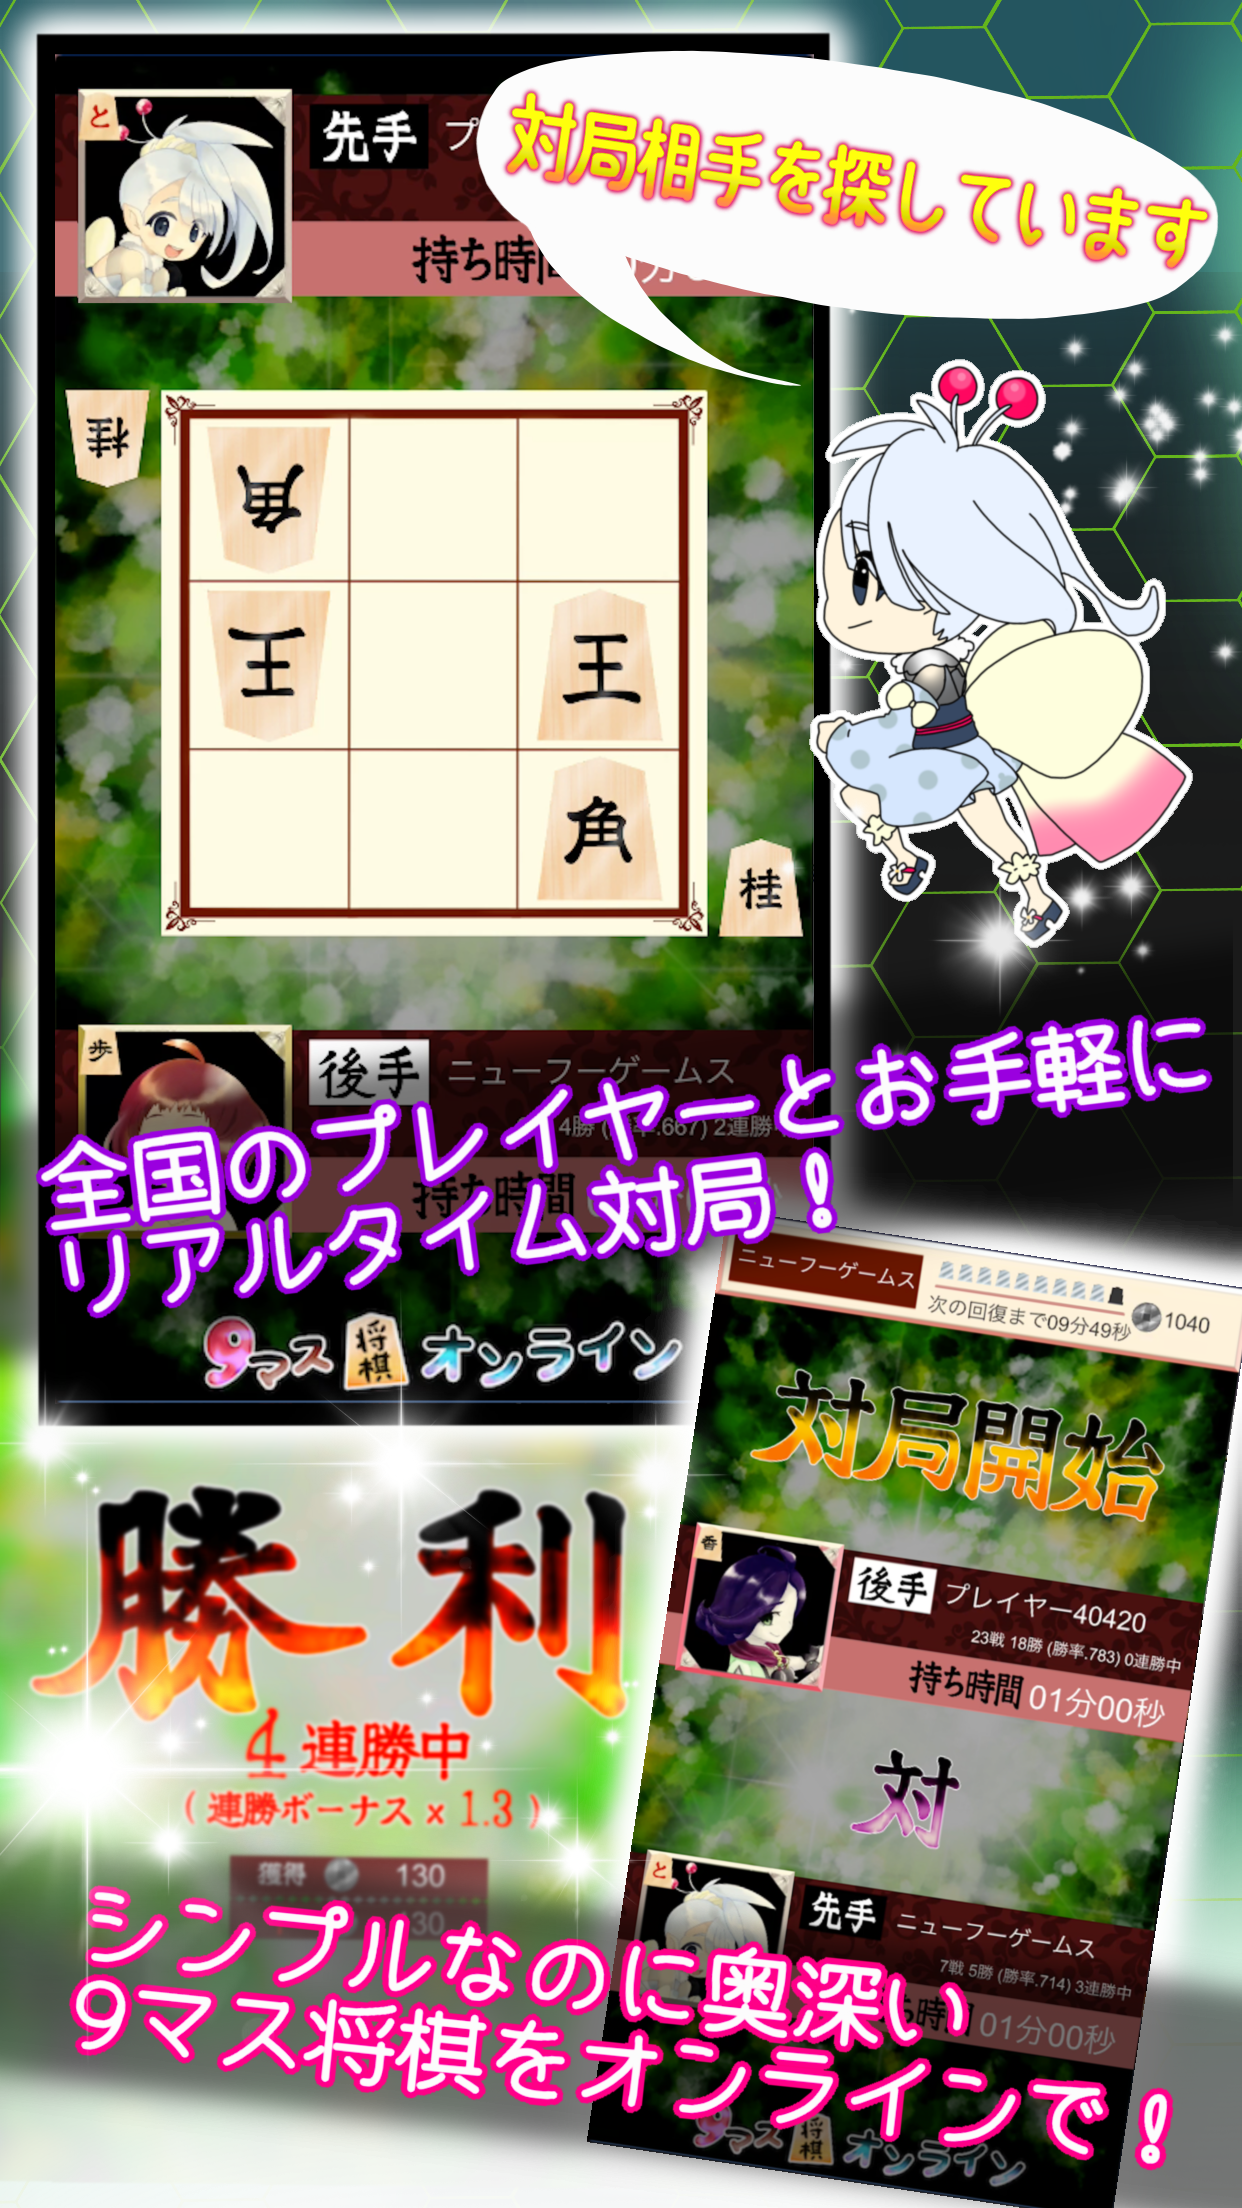 Screenshot 1 of 9 trout shogi online 1.2.8